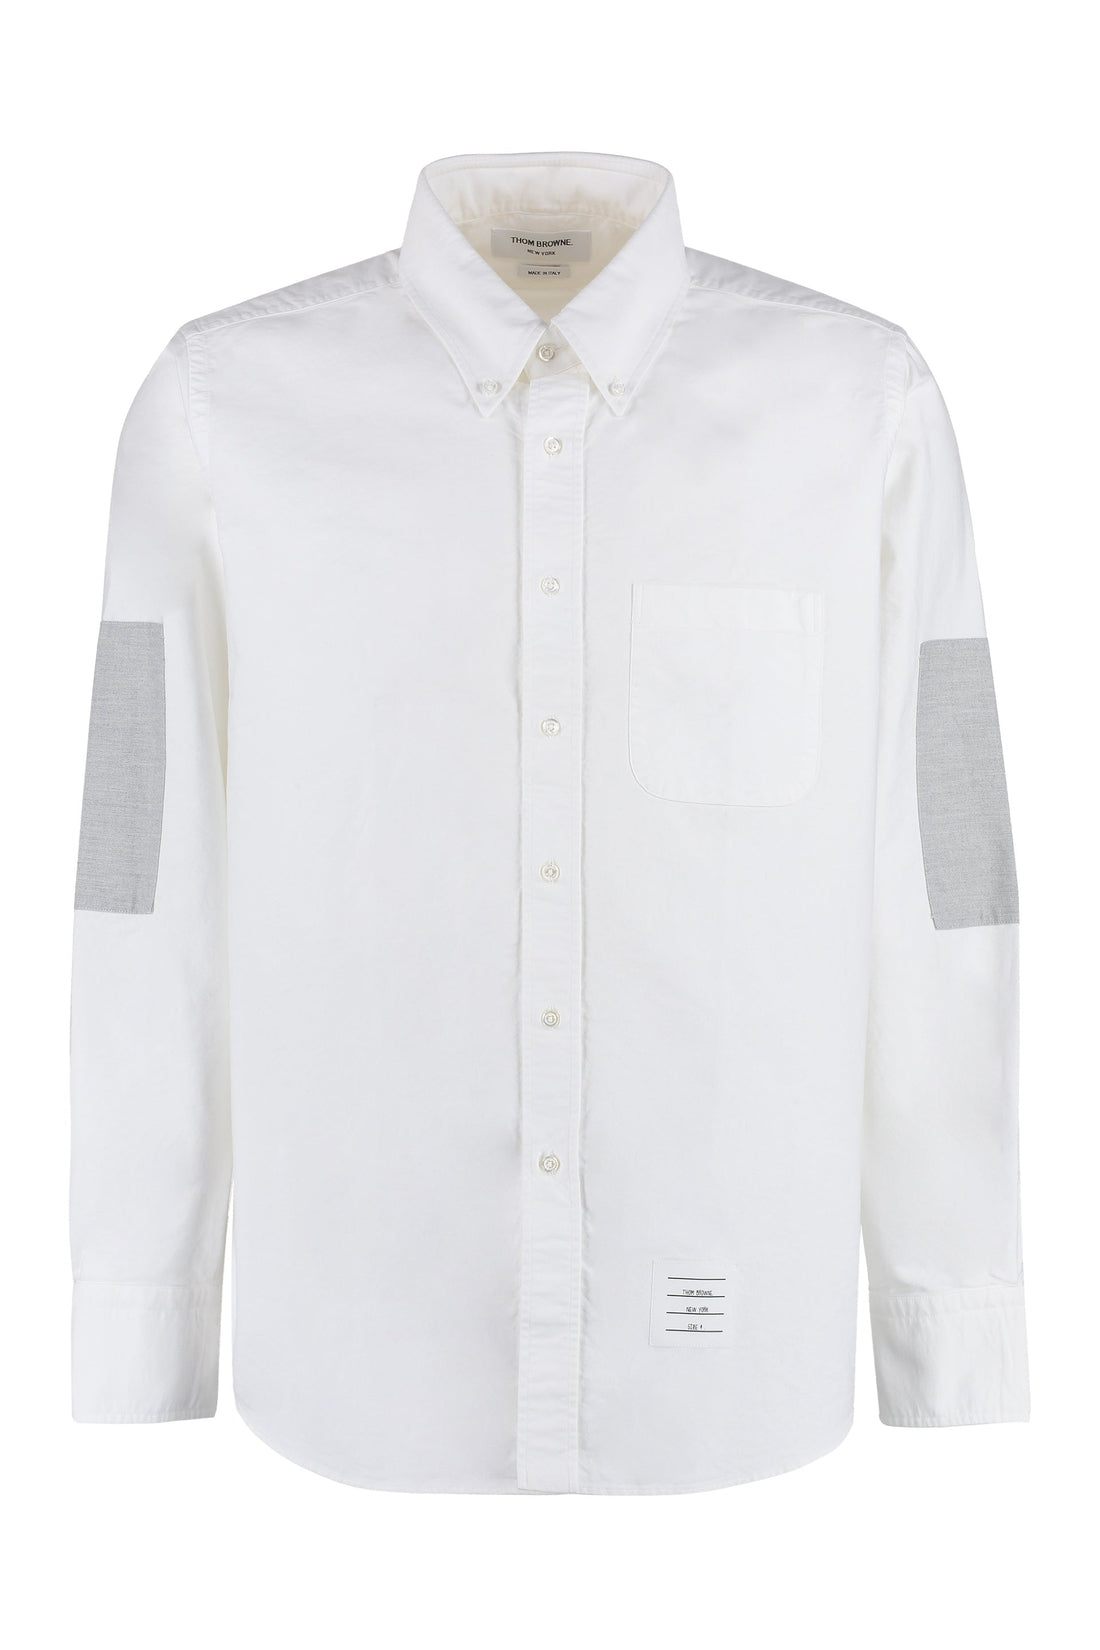 Thom Browne-OUTLET-SALE-Cotton poplin shirt-ARCHIVIST